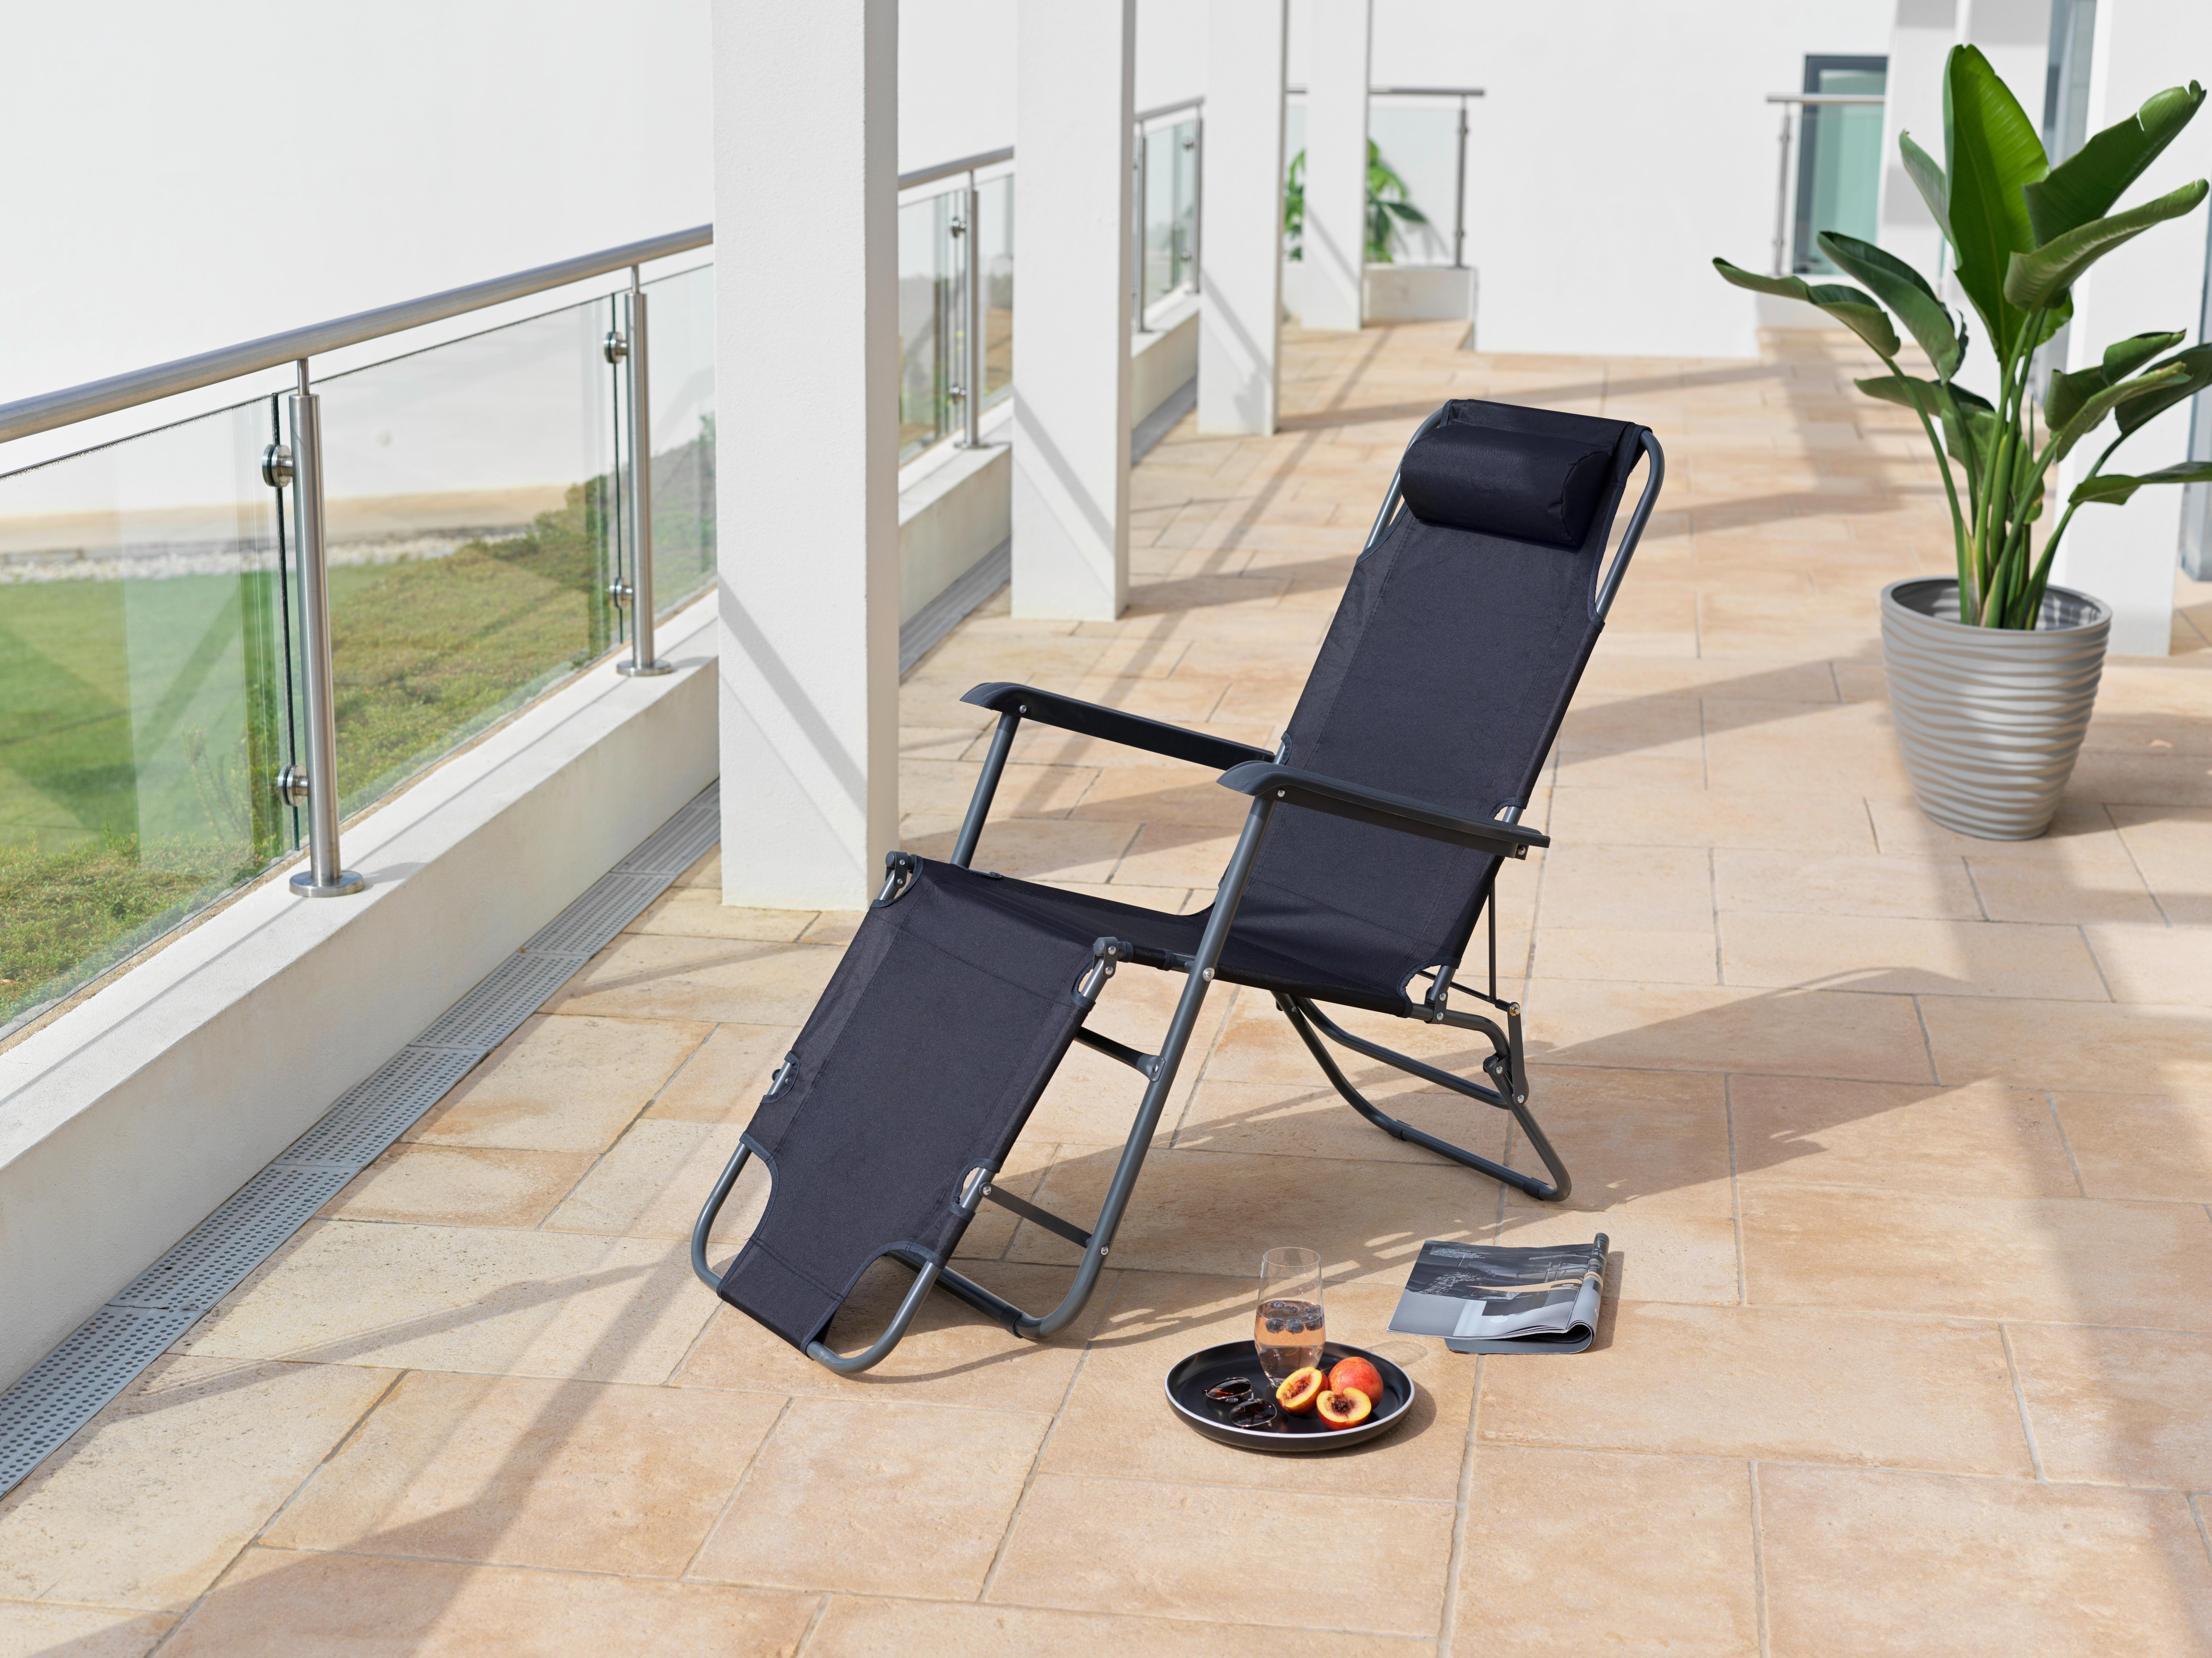 Ležadlo Na Opaľovanie Relax Chair 2in1 - čierna, Moderný, kov (178/60/95cm) - Modern Living